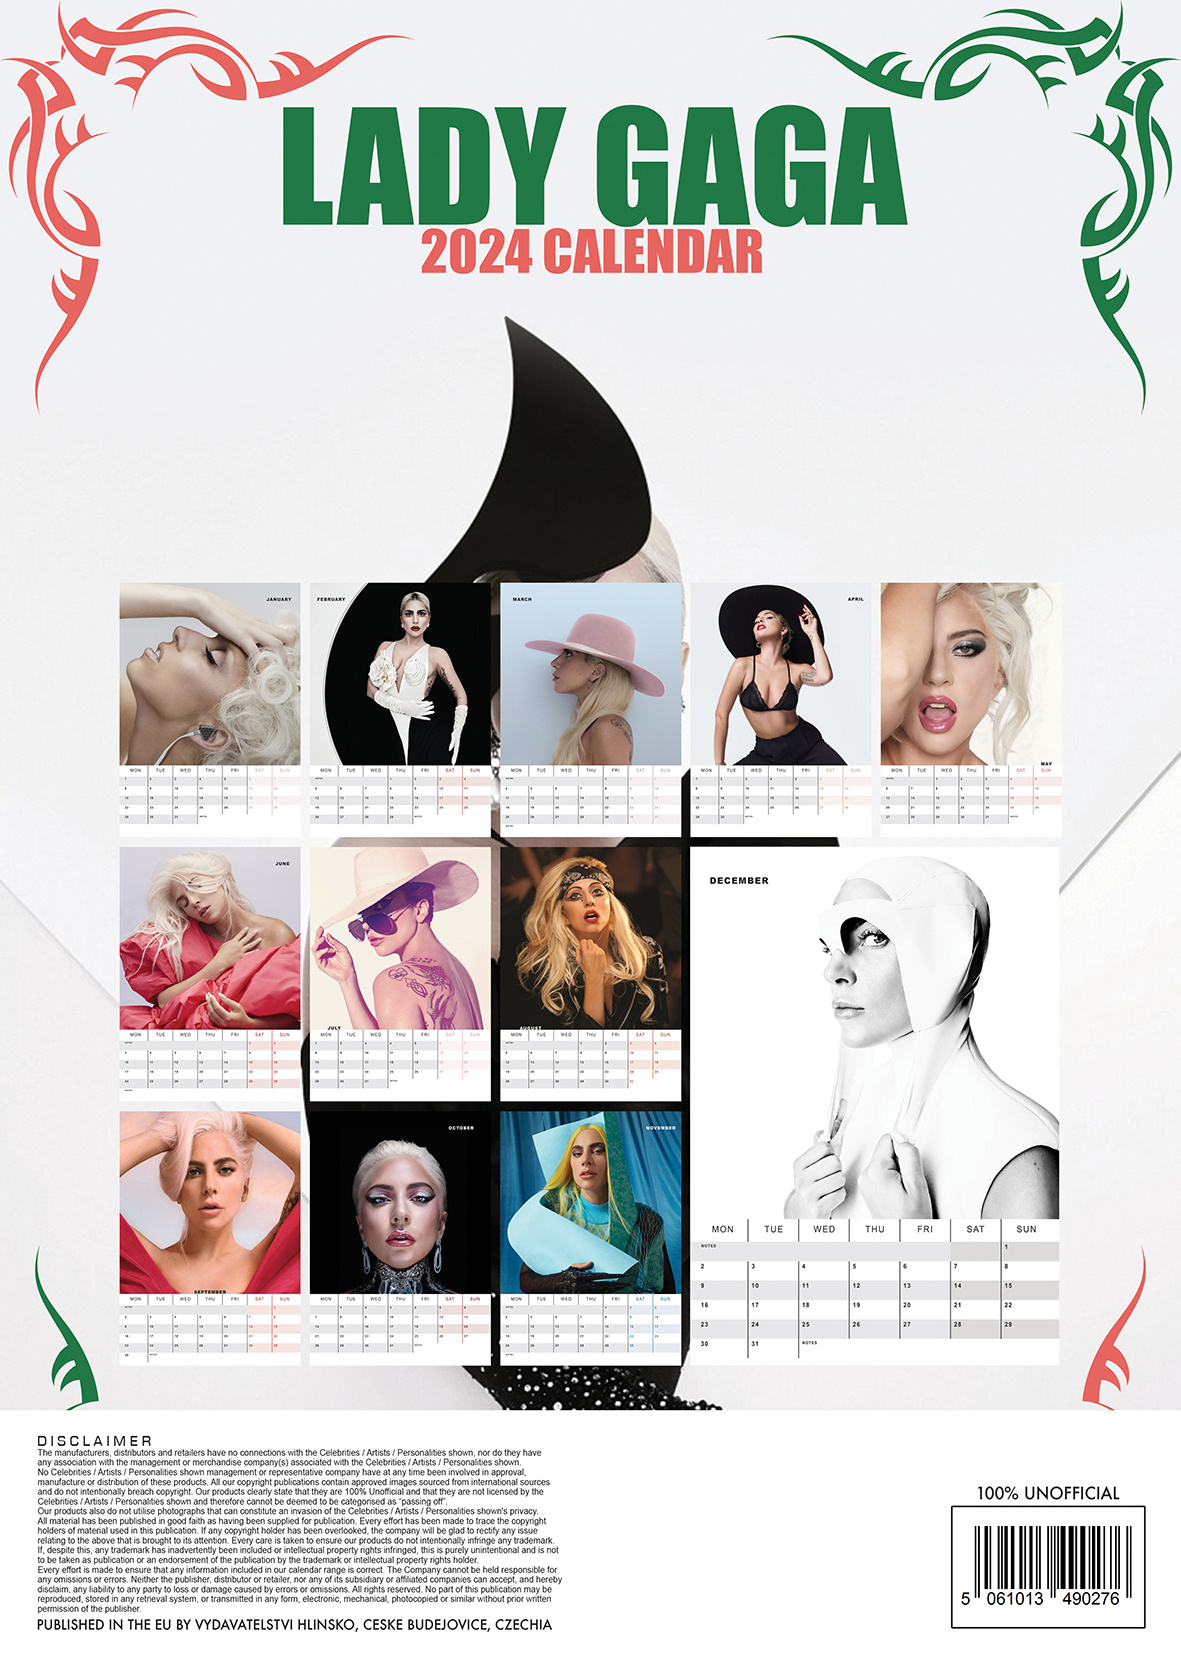 Buying Lady Gaga Calendar 2024 simply order online